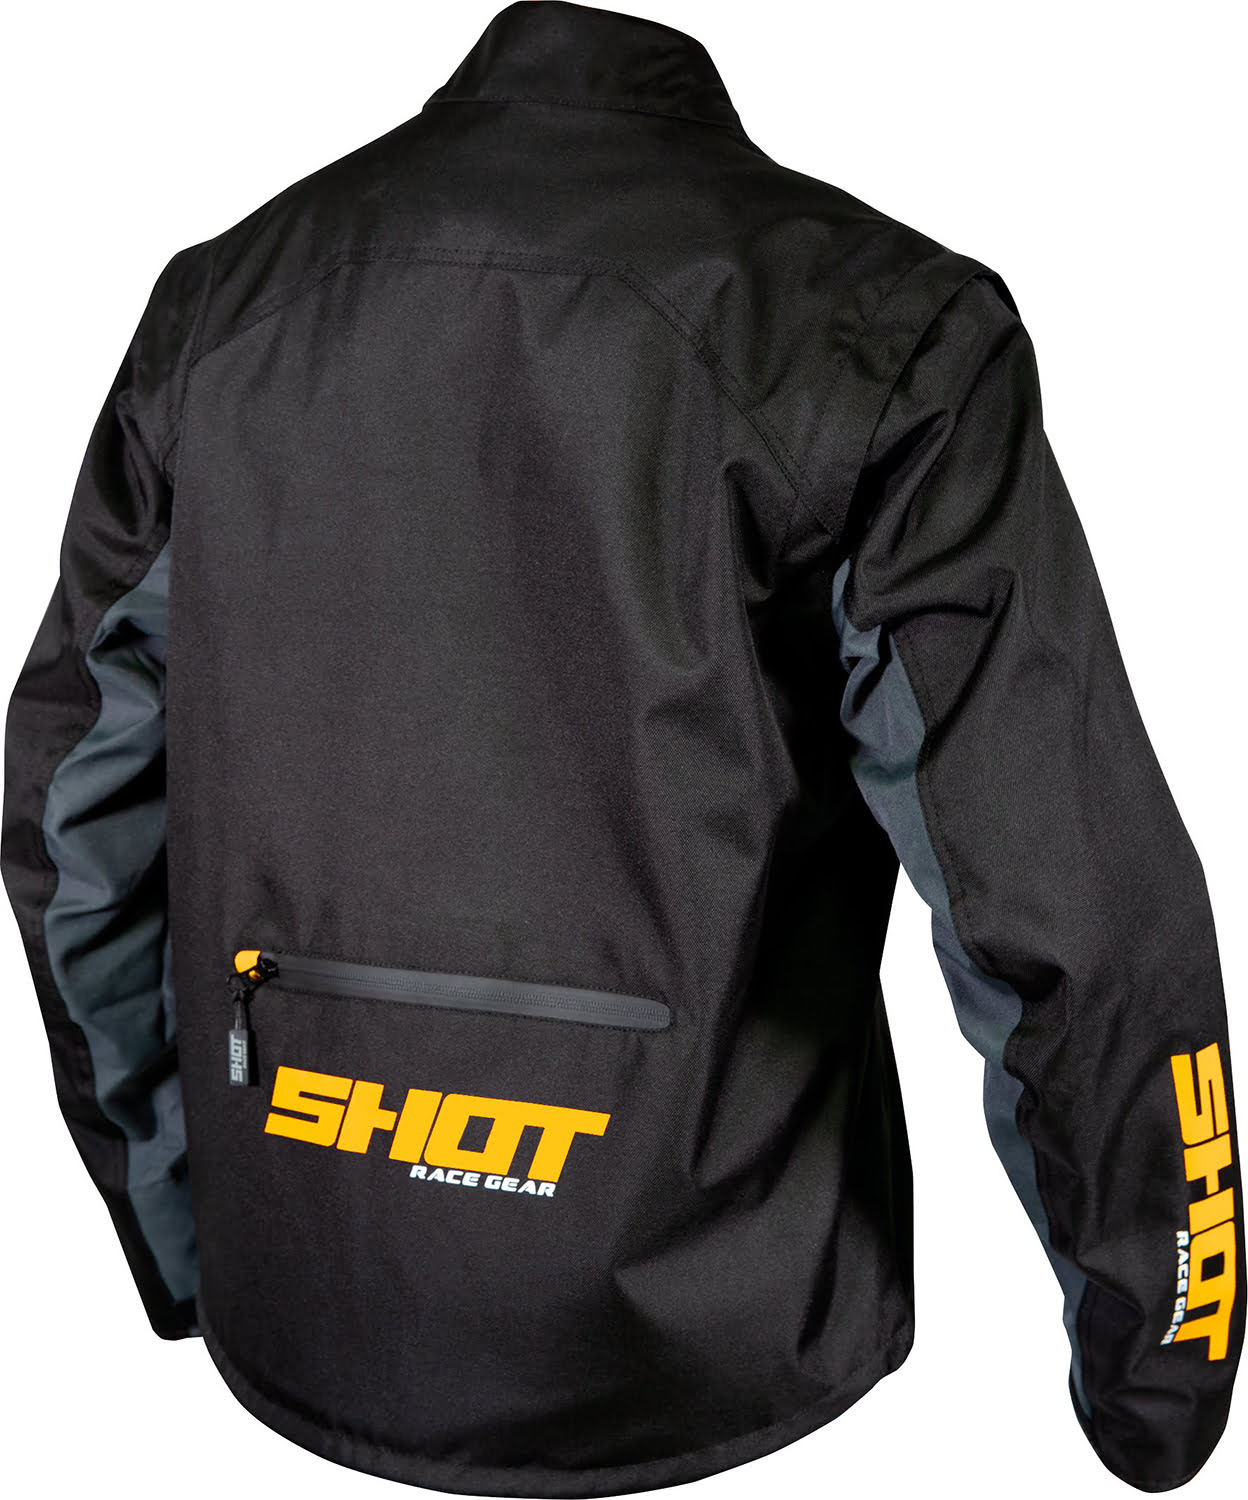 Jacket CONTACT ASSAULT BLACK / NEON ORANGE SHOT 